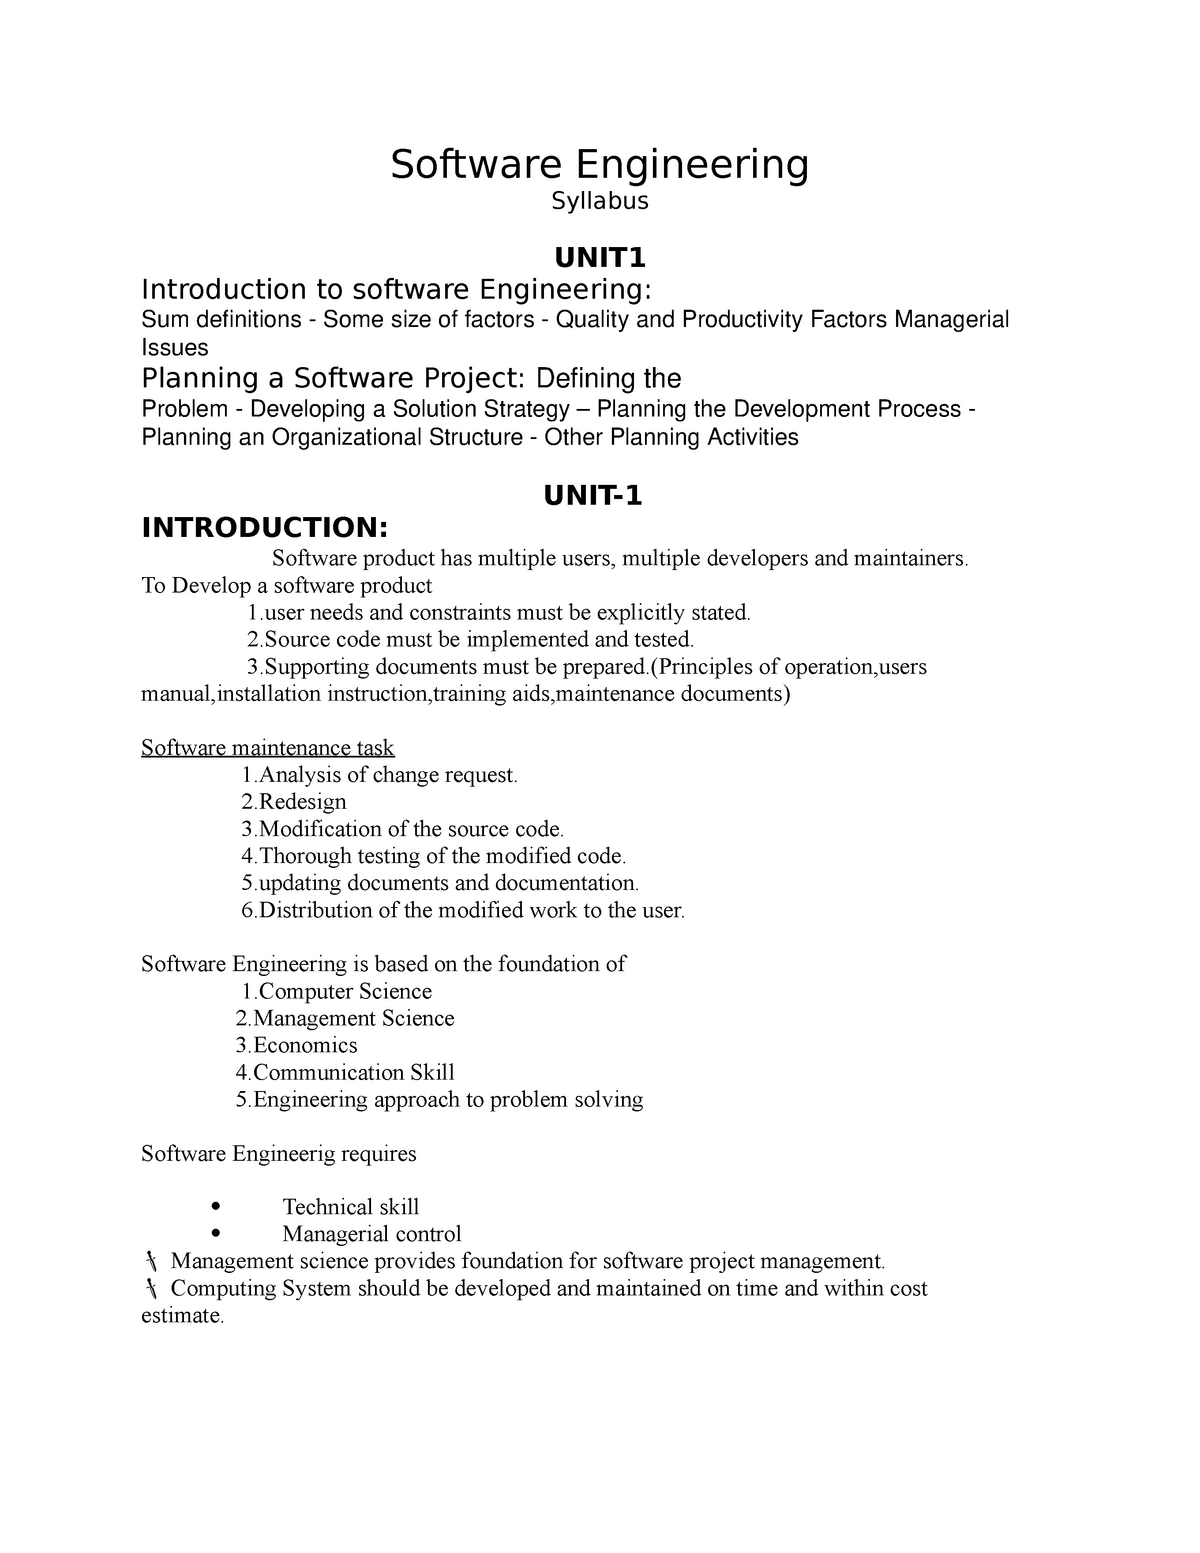 Software Engineering Software Engineering Syllabus Unit Introduction To Software Engineering 9027